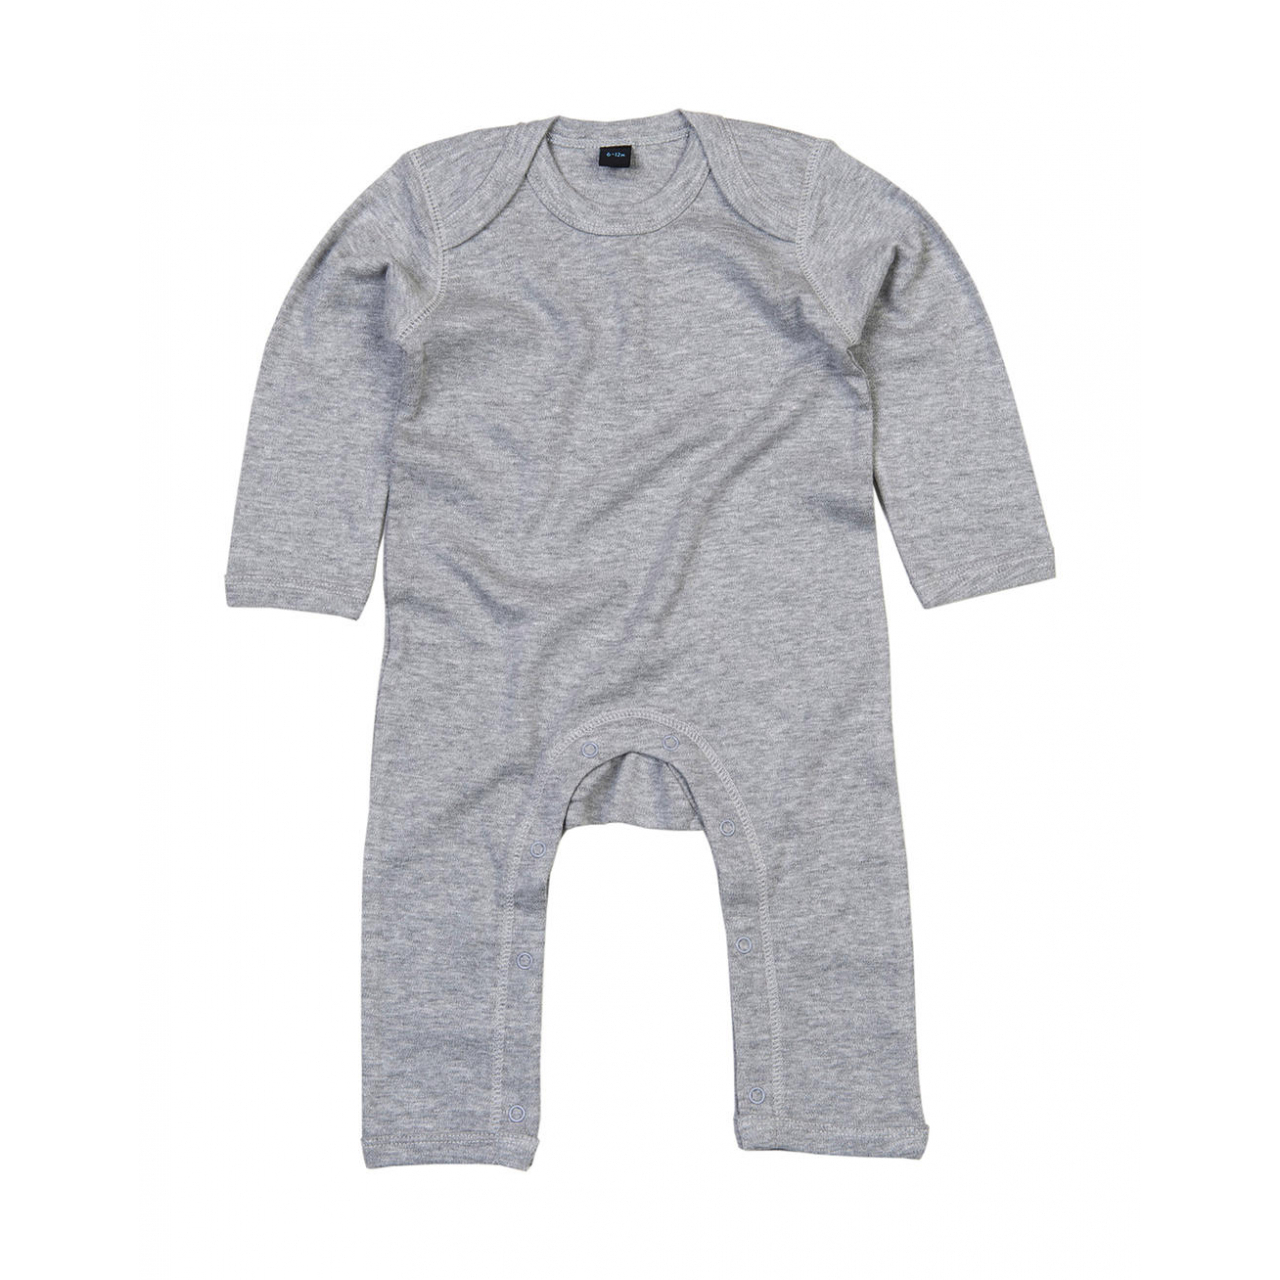 Dětské pyžamo Babybugz - šedé, 6-12 měsíců